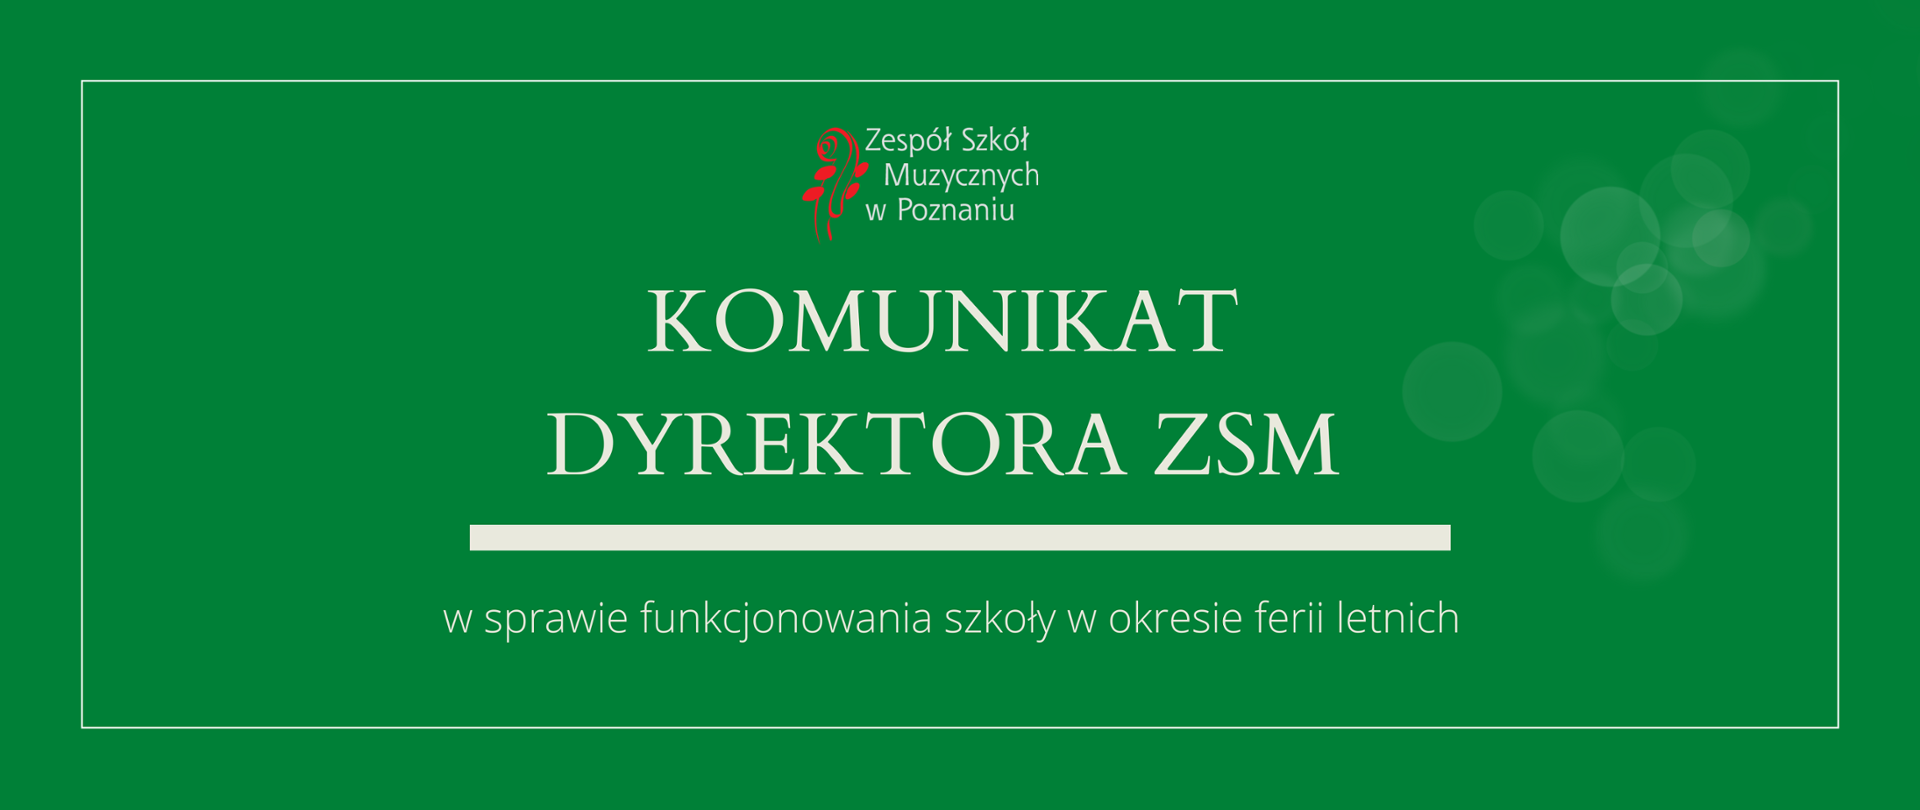 Grafika w zielonym odcieniu z logo ZSM i tekstem /"KOMUNIKAT DYREKTORA ZSM"/ poniżej biała gruba linia, niżej tekst /"w sprawie funkcjonowania szkoły w okresie ferii letnich"/